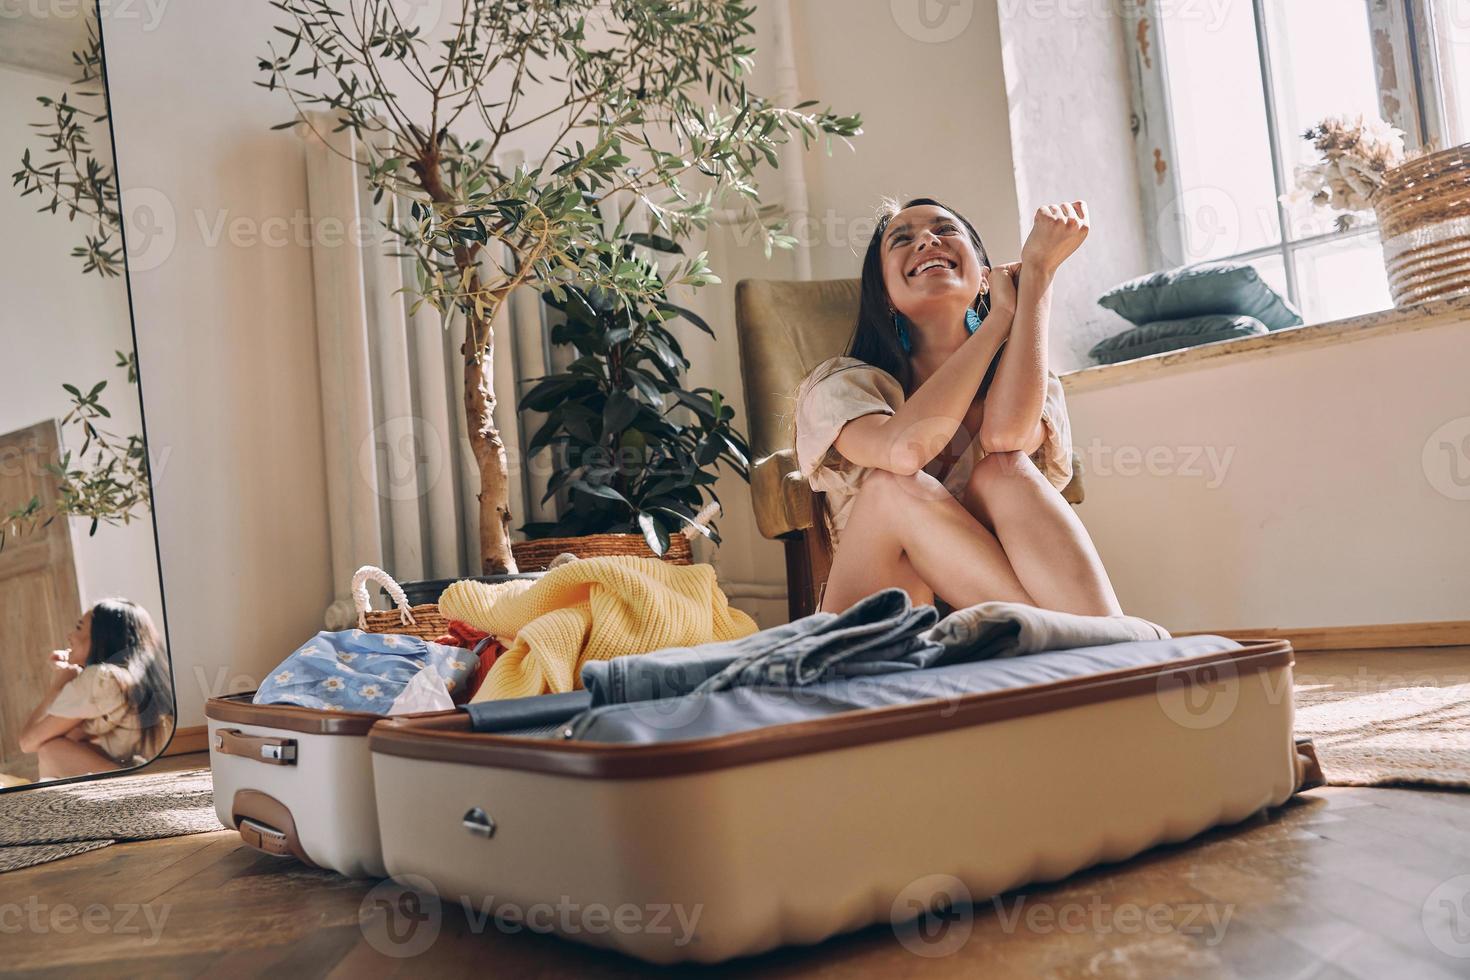 belle jeune femme à l'air heureuse assise près de la valise ouverte sur le sol à la maison photo